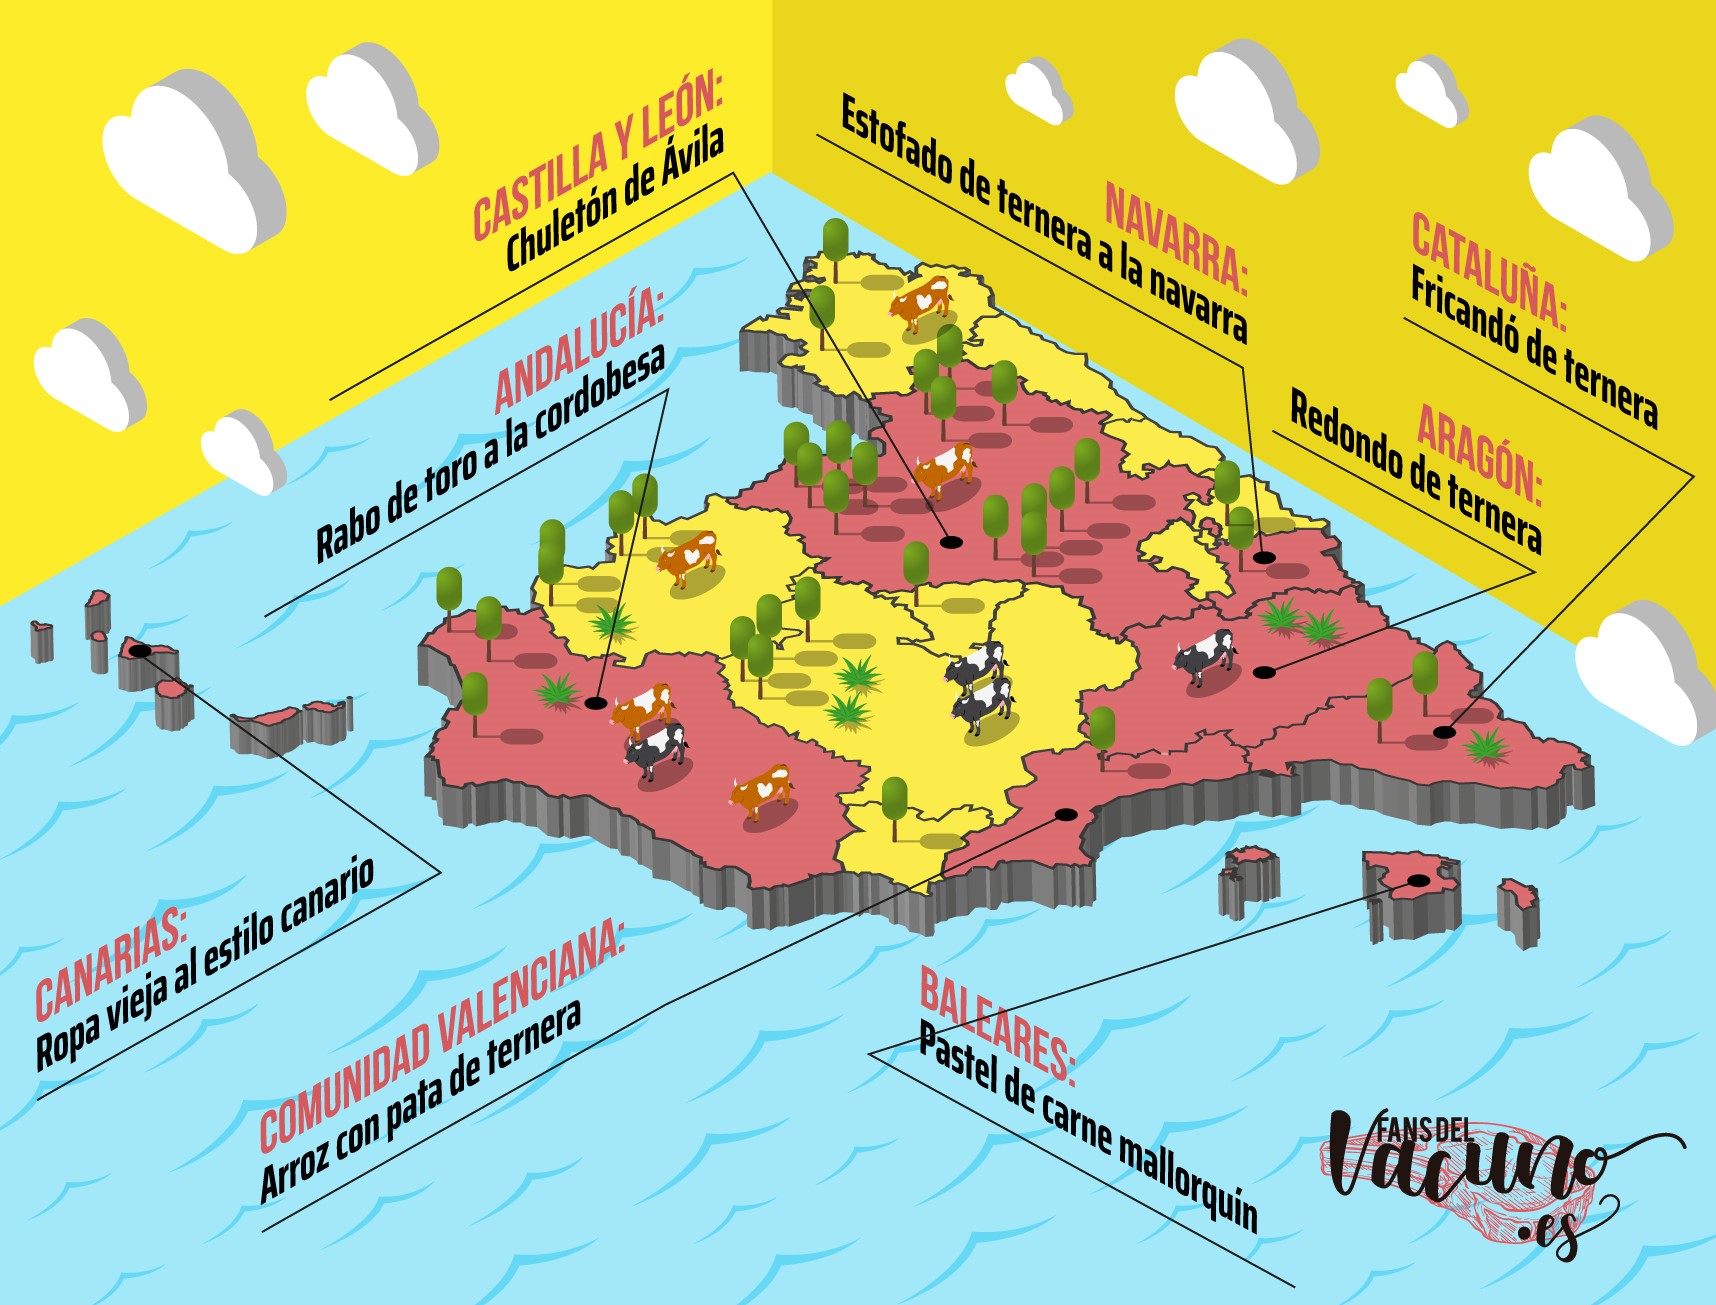 Mapa de España con los platos principales de carne de vacuno de las Comunidades Autónomas donde más turismo se concentra en los meses de verano